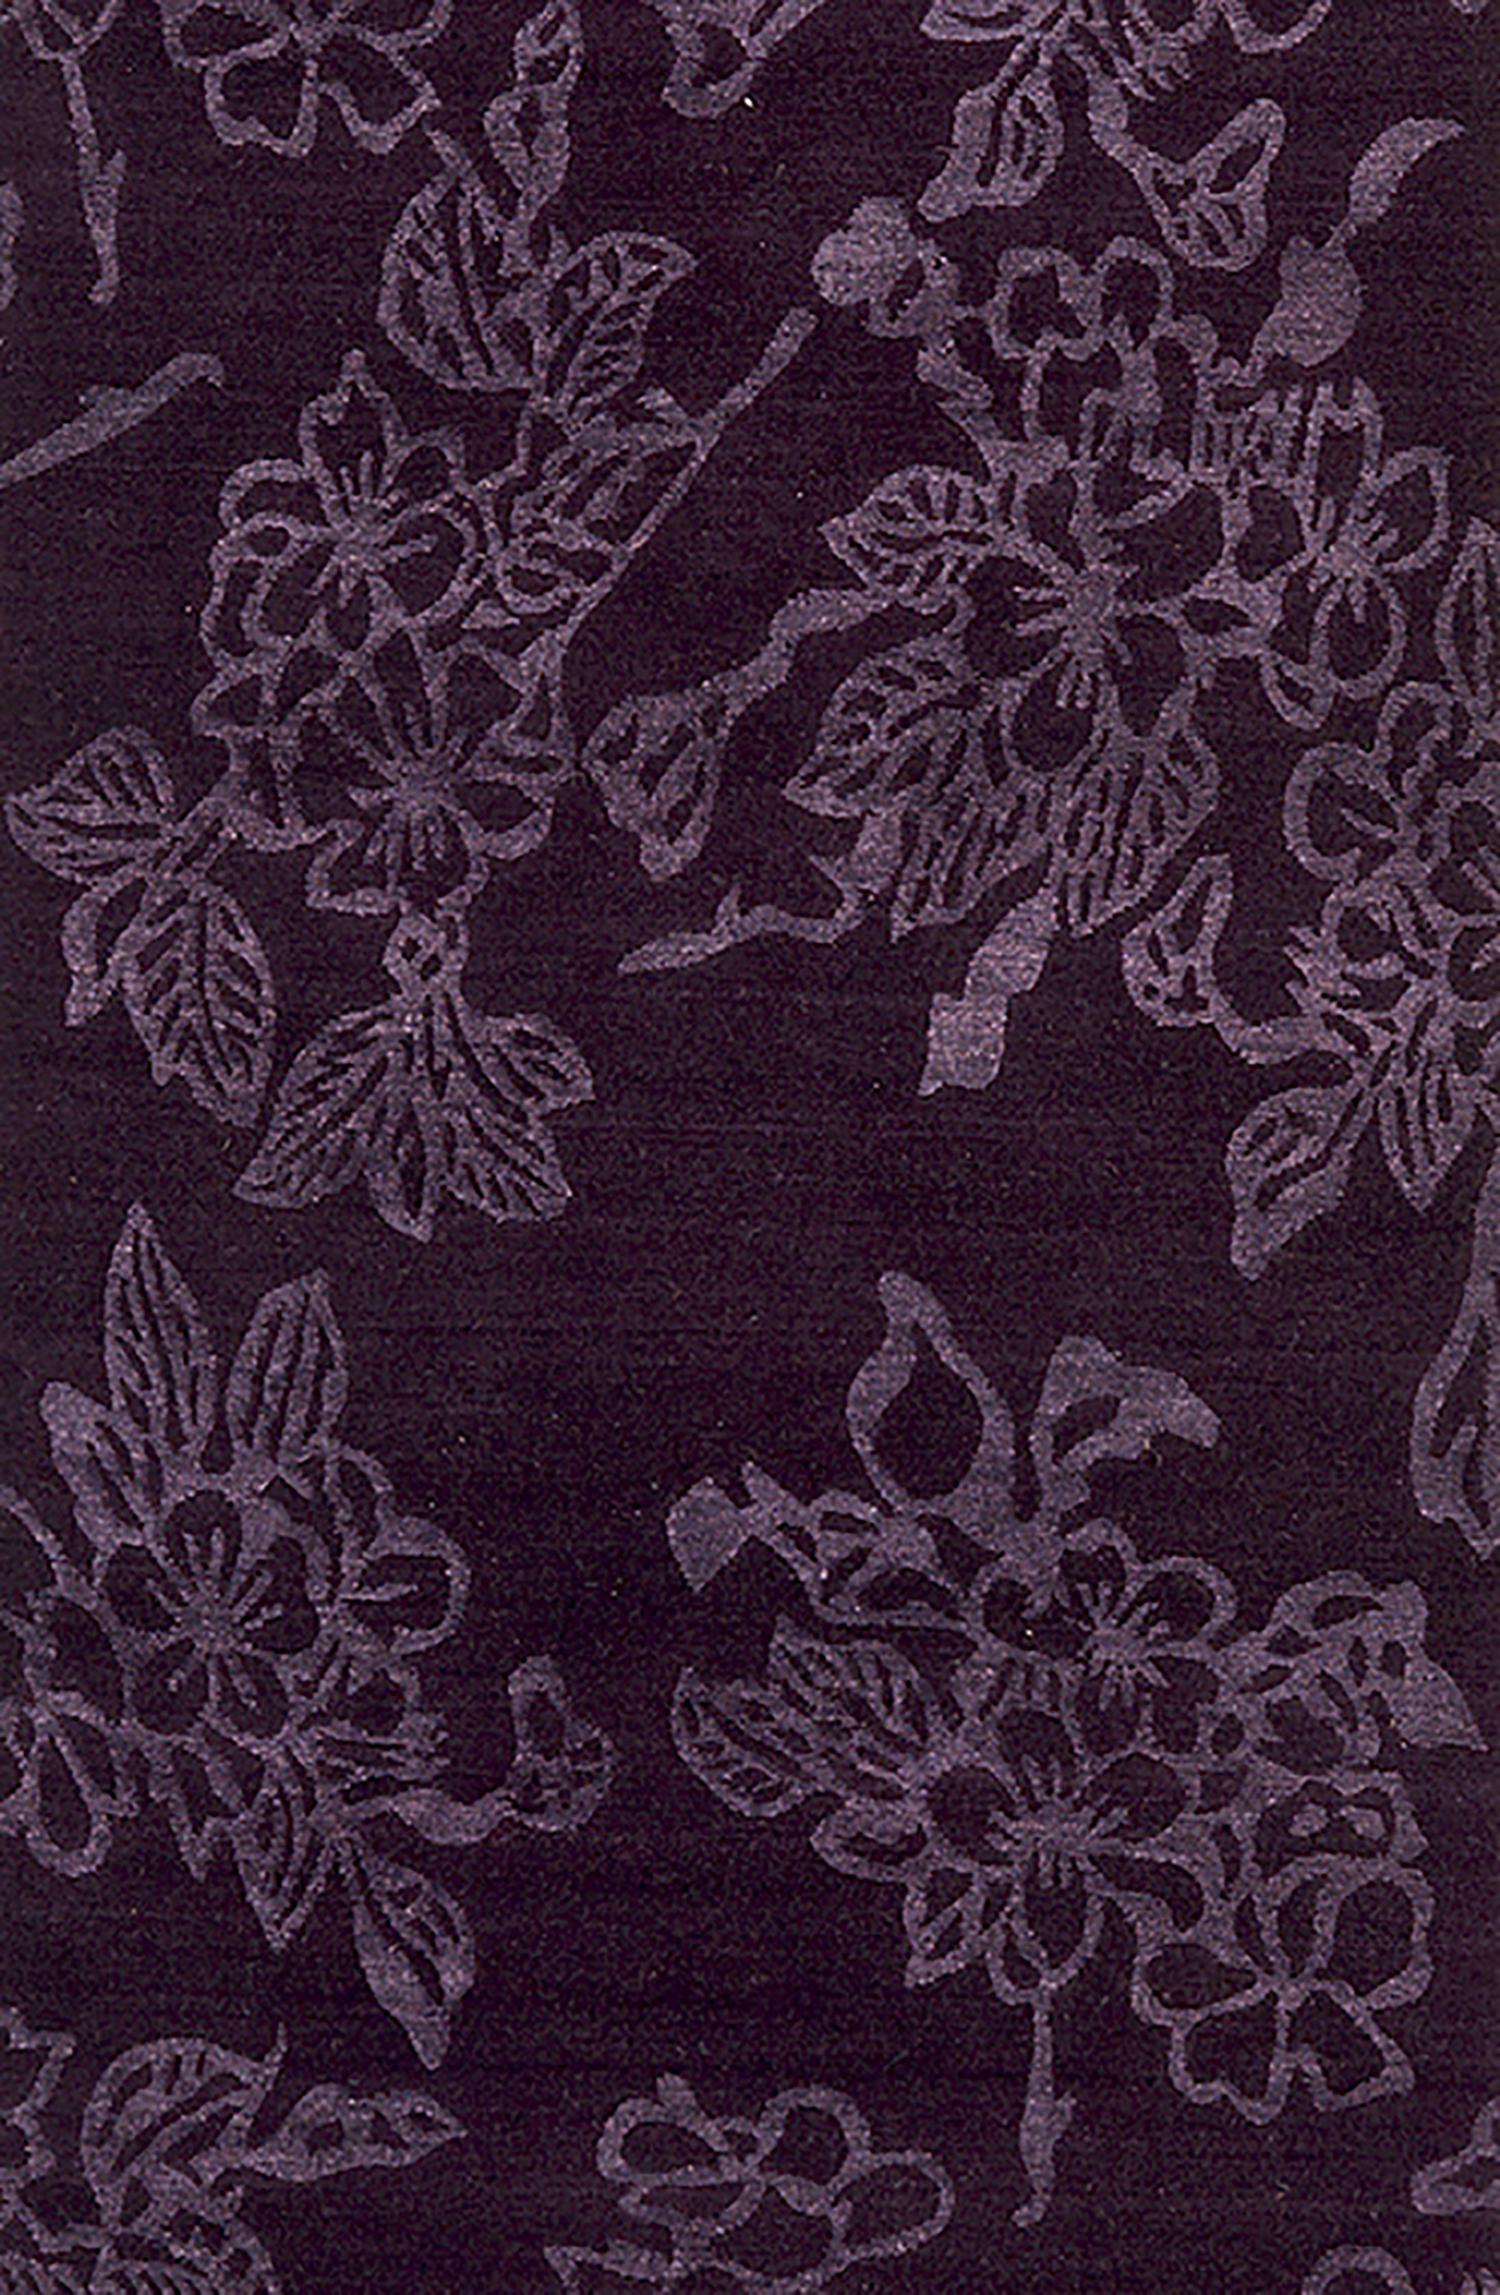 royal purple detail